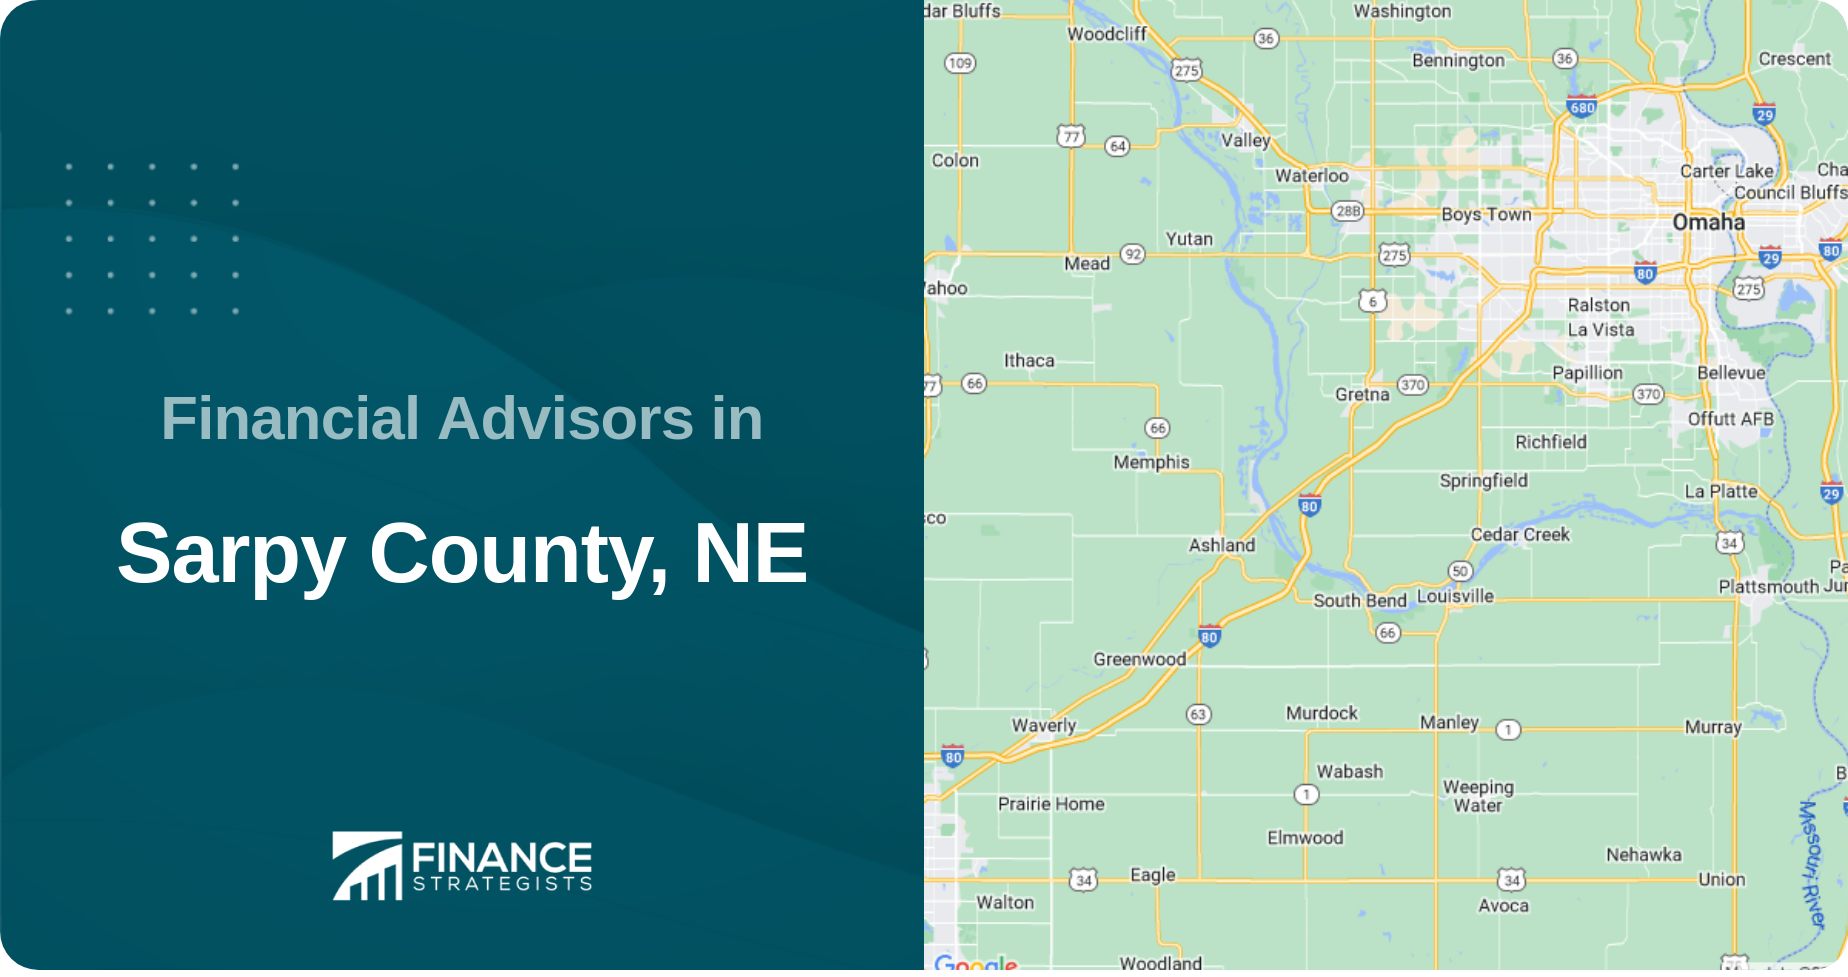 Financial Advisors in Sarpy County, NE